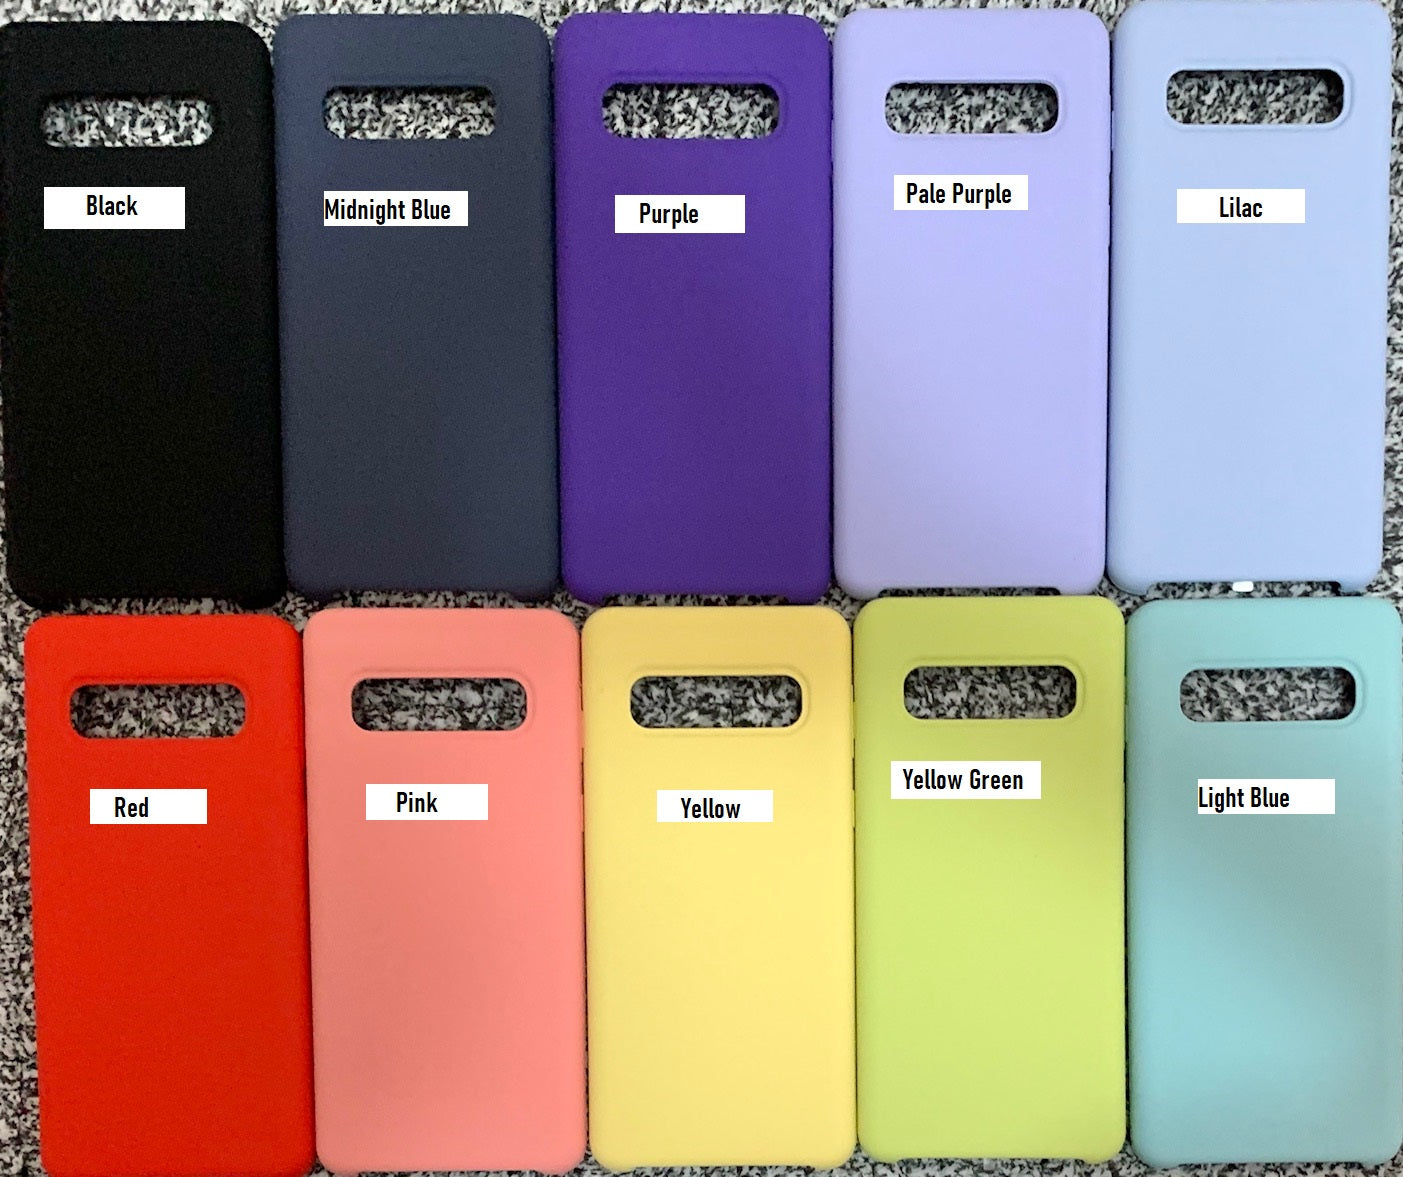 Back silicone case for Samsung Galaxy S8 S8+ S9 S9+ S10 S10+ S10e/lite